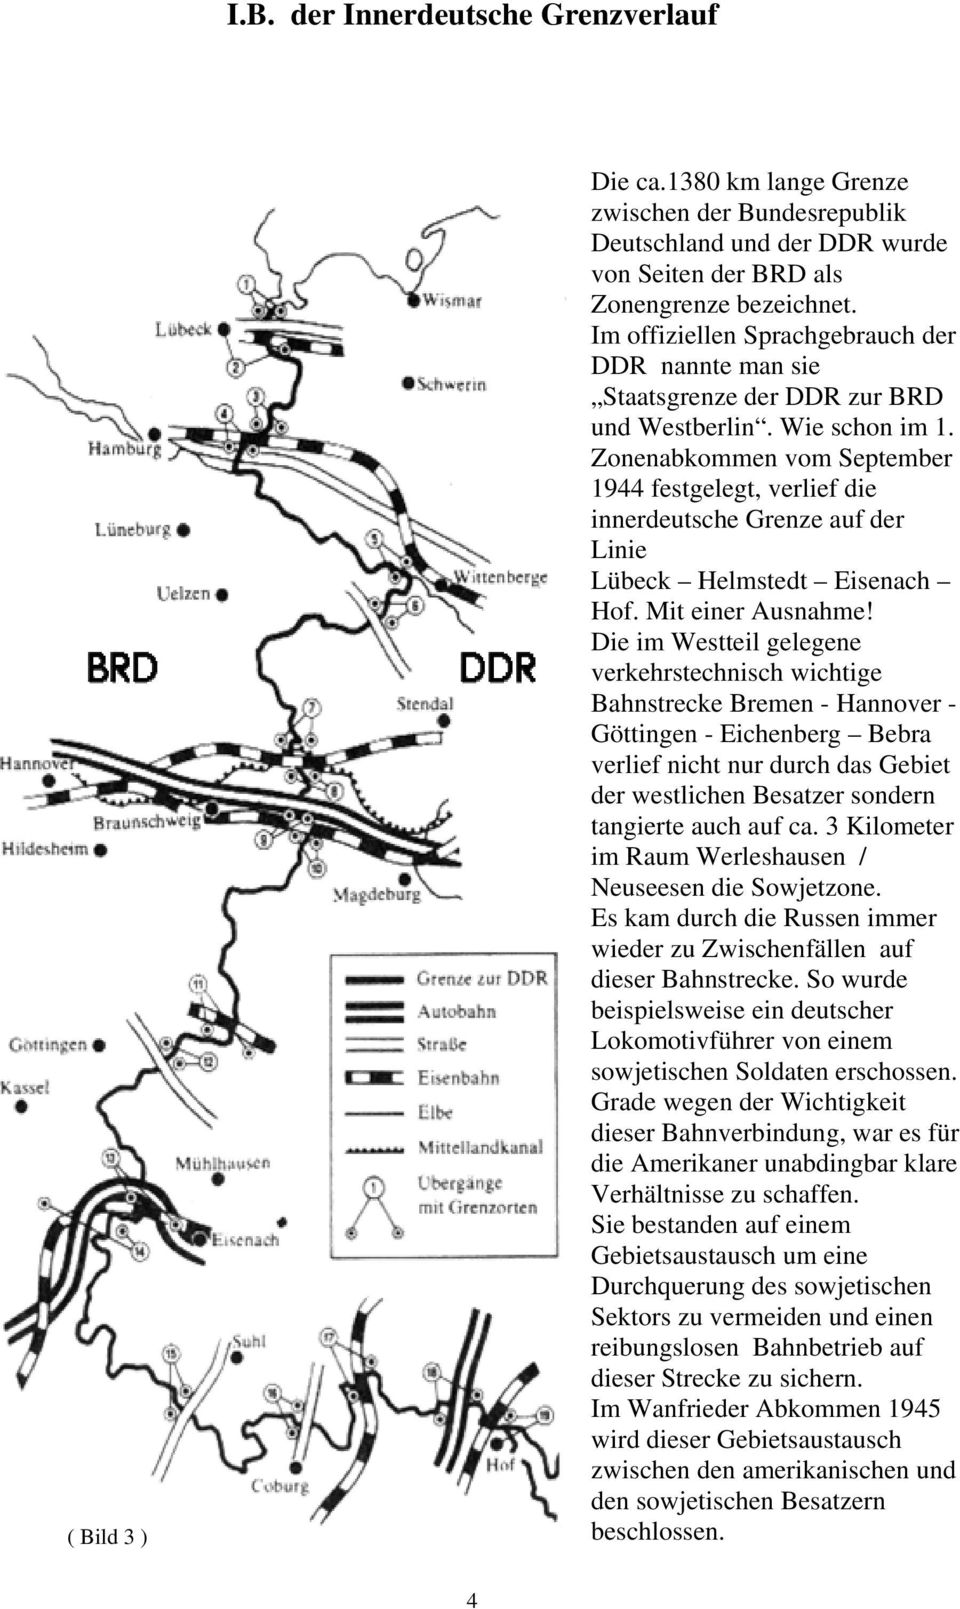 Zonenabkommen vom September 1944 festgelegt, verlief die innerdeutsche Grenze auf der Linie Lübeck Helmstedt Eisenach Hof. Mit einer Ausnahme!